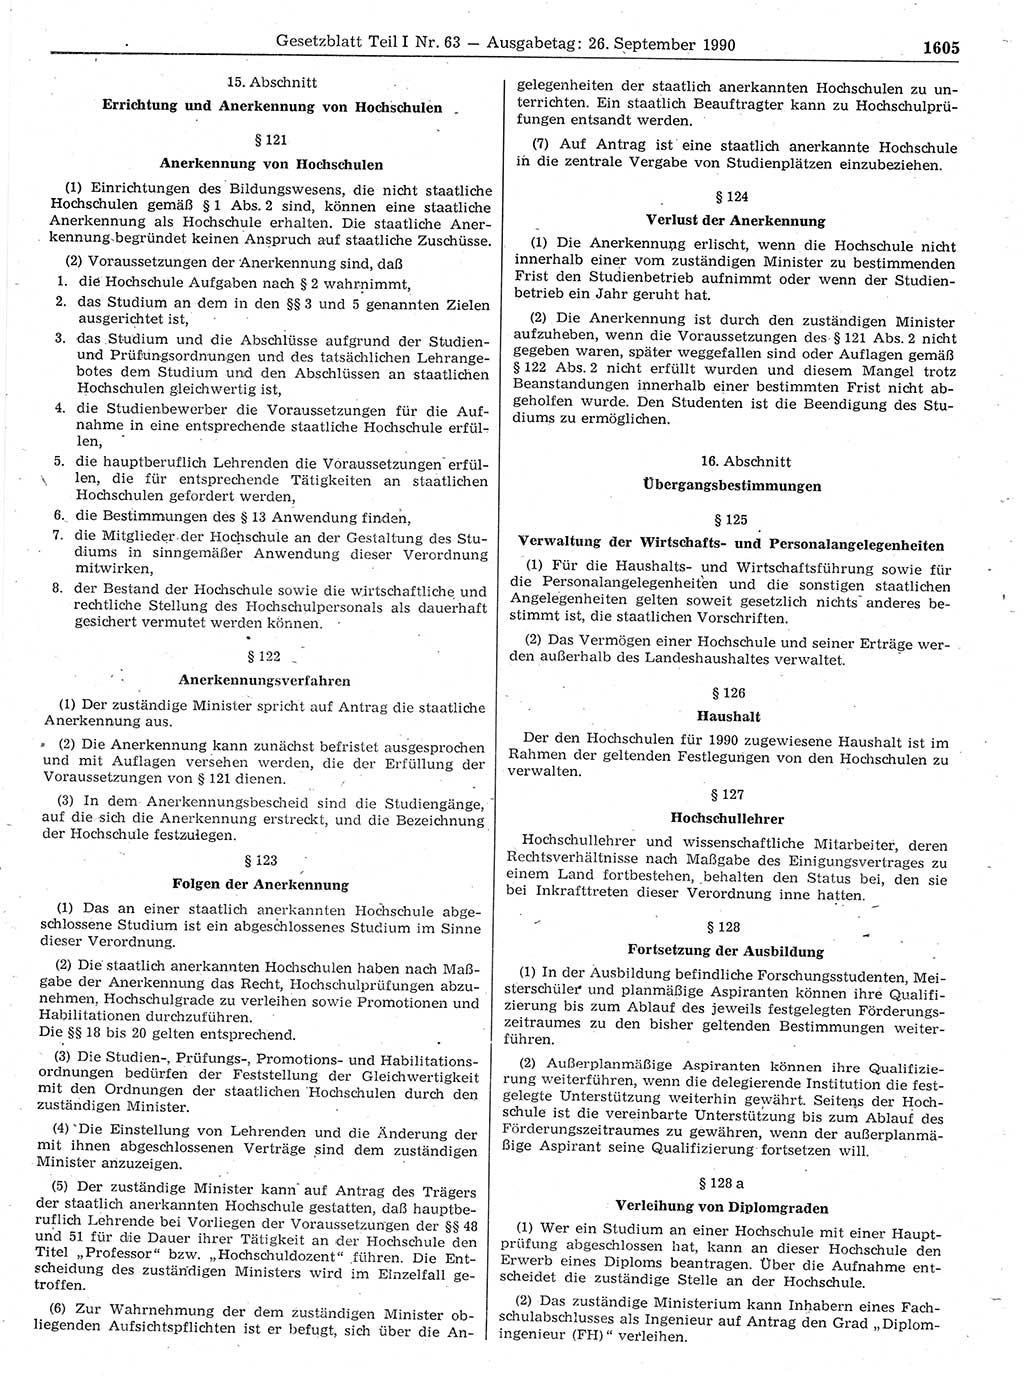 Gesetzblatt (GBl.) der Deutschen Demokratischen Republik (DDR) Teil Ⅰ 1990, Seite 1605 (GBl. DDR Ⅰ 1990, S. 1605)